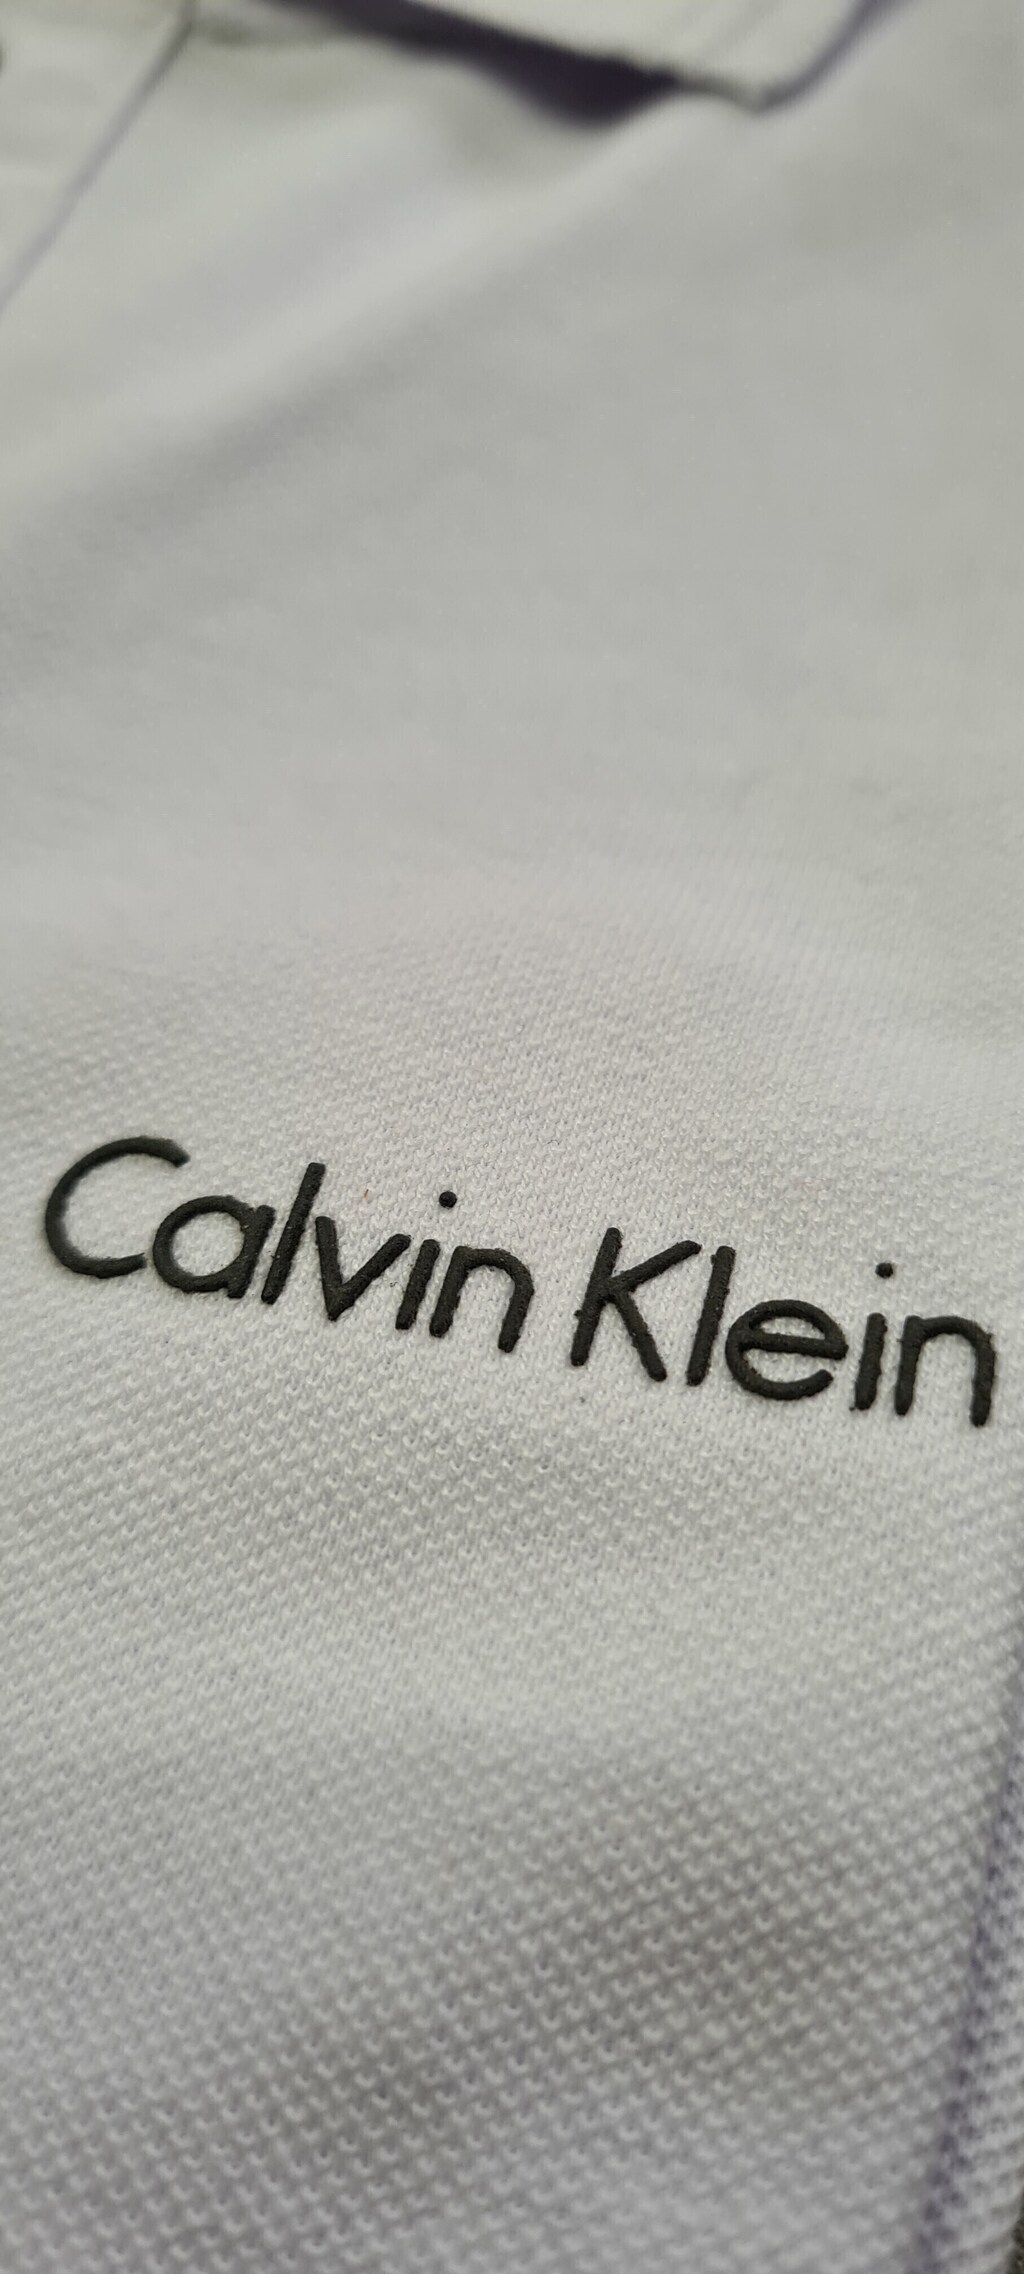 Camisa Polo Calvin Klein - Compre agora